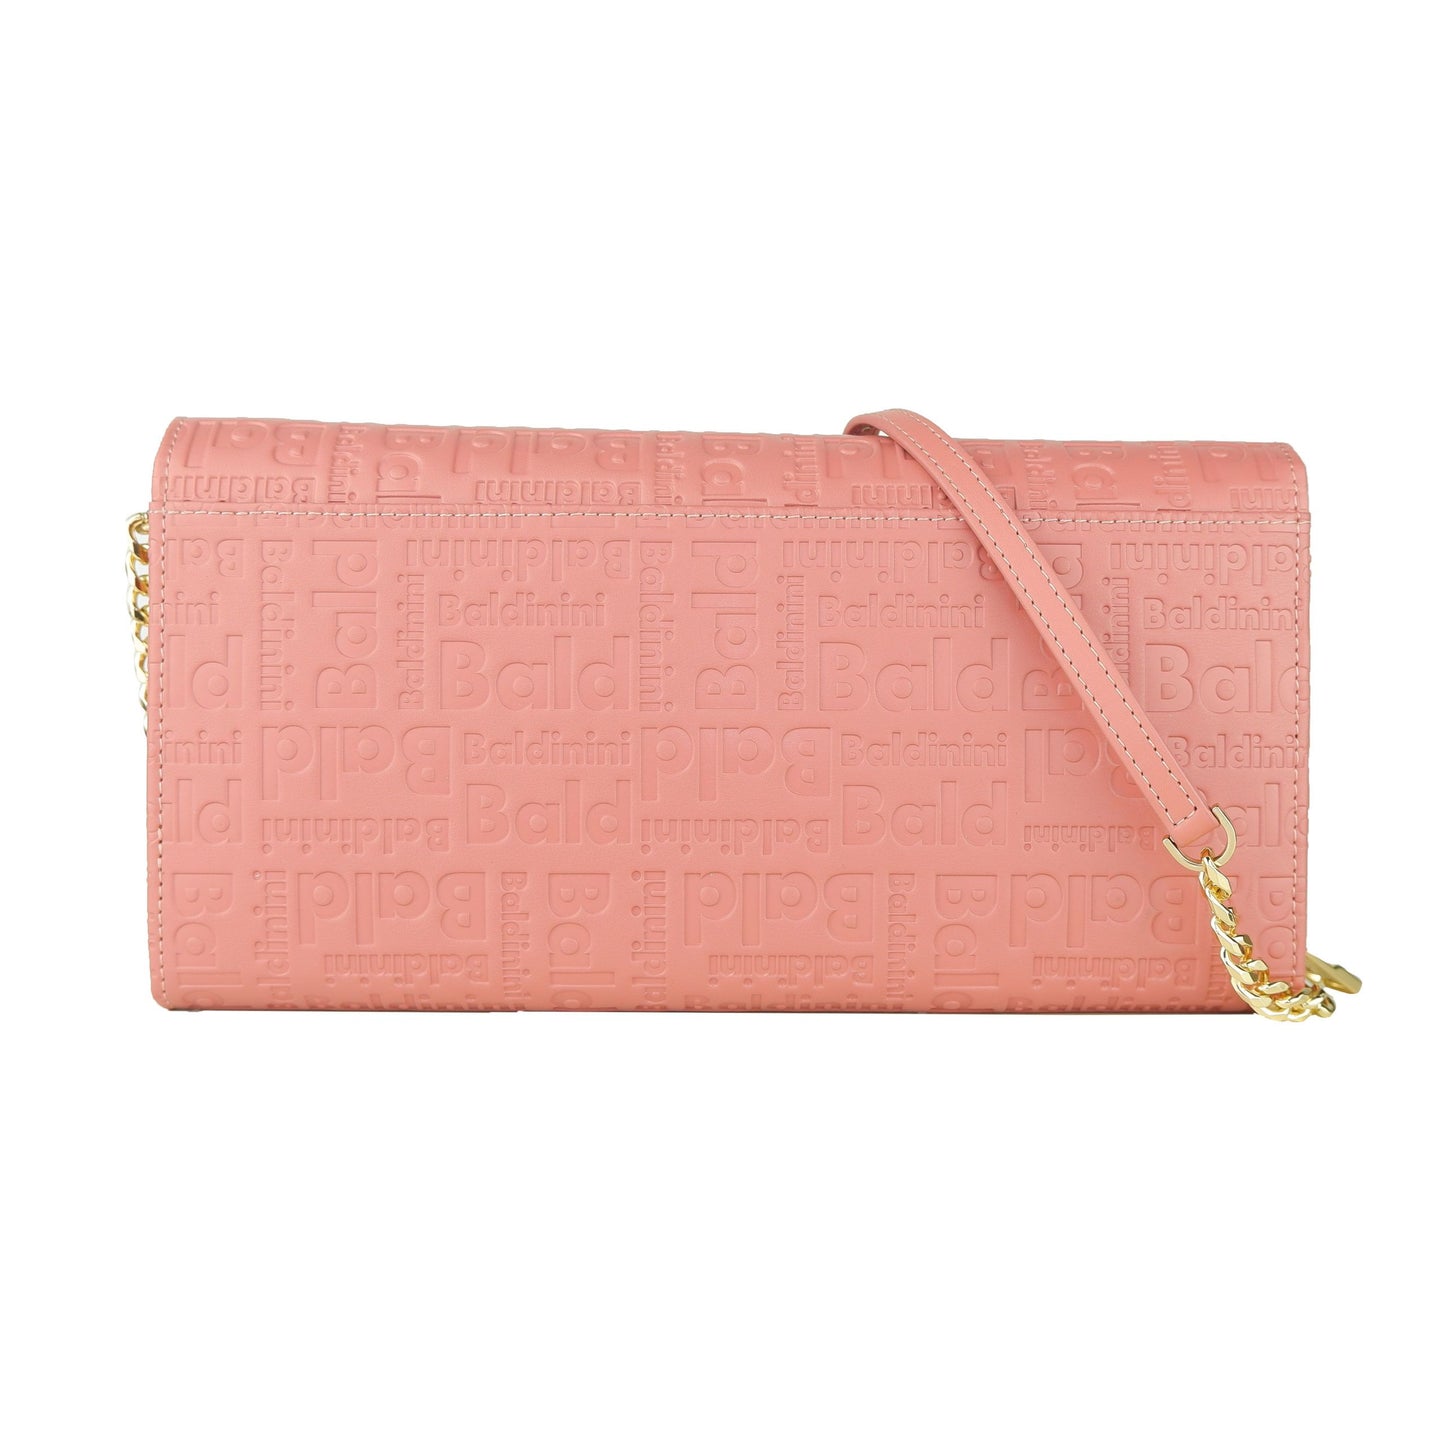 Elegant Dark Pink Crossbody Bag for Stylish Carrying